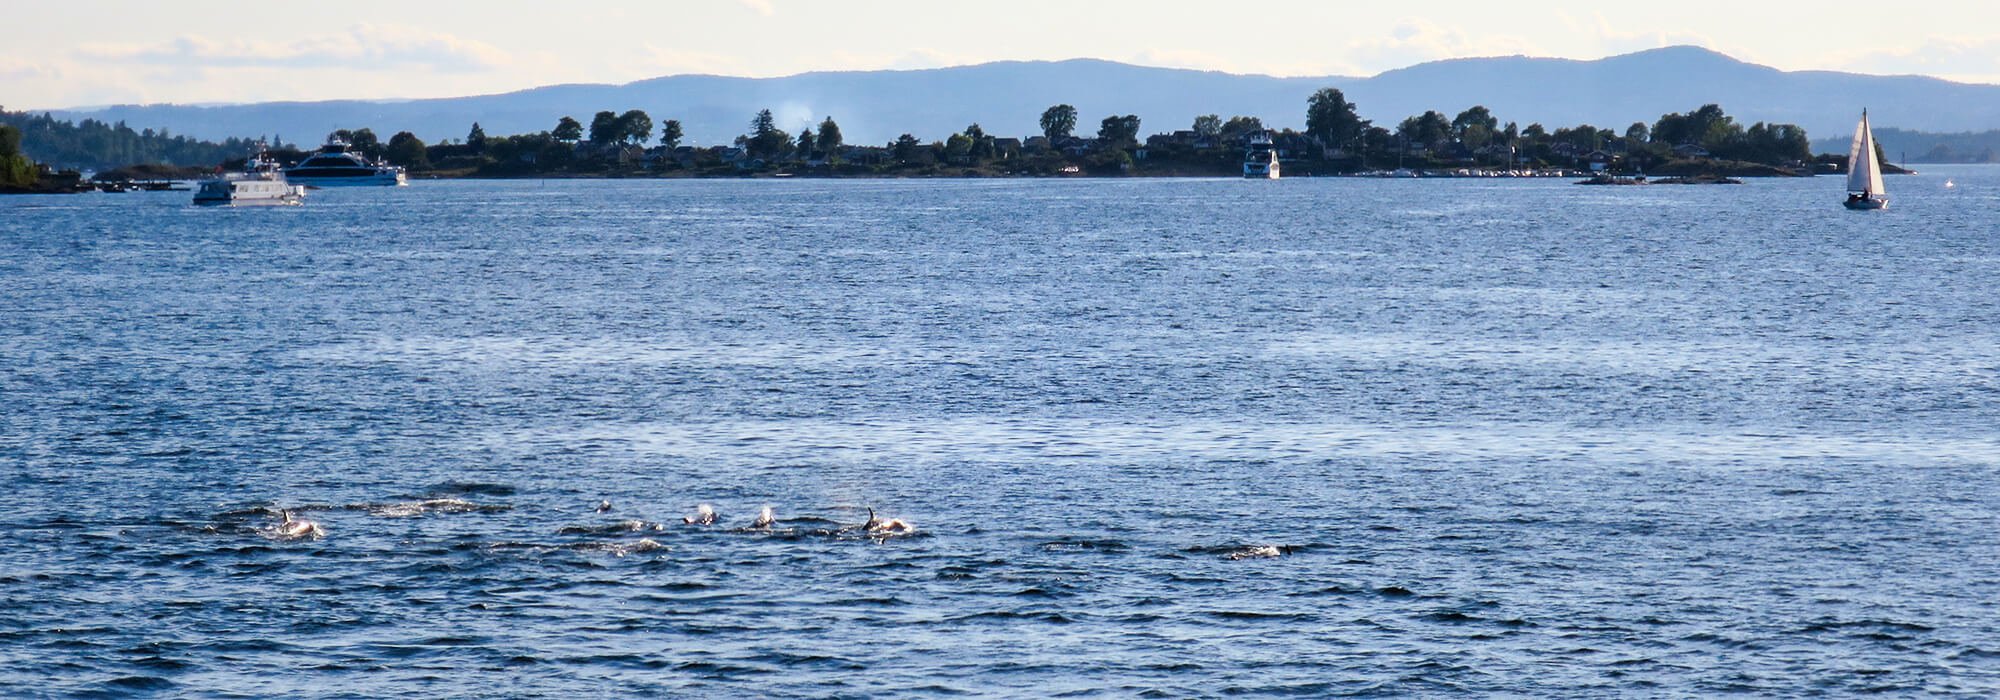 Workation in Norwegen, Fahrt mit den Ruder-Fähren direkt im Oslofjord mit einer Gruppe Delfinen direkt im Fjord